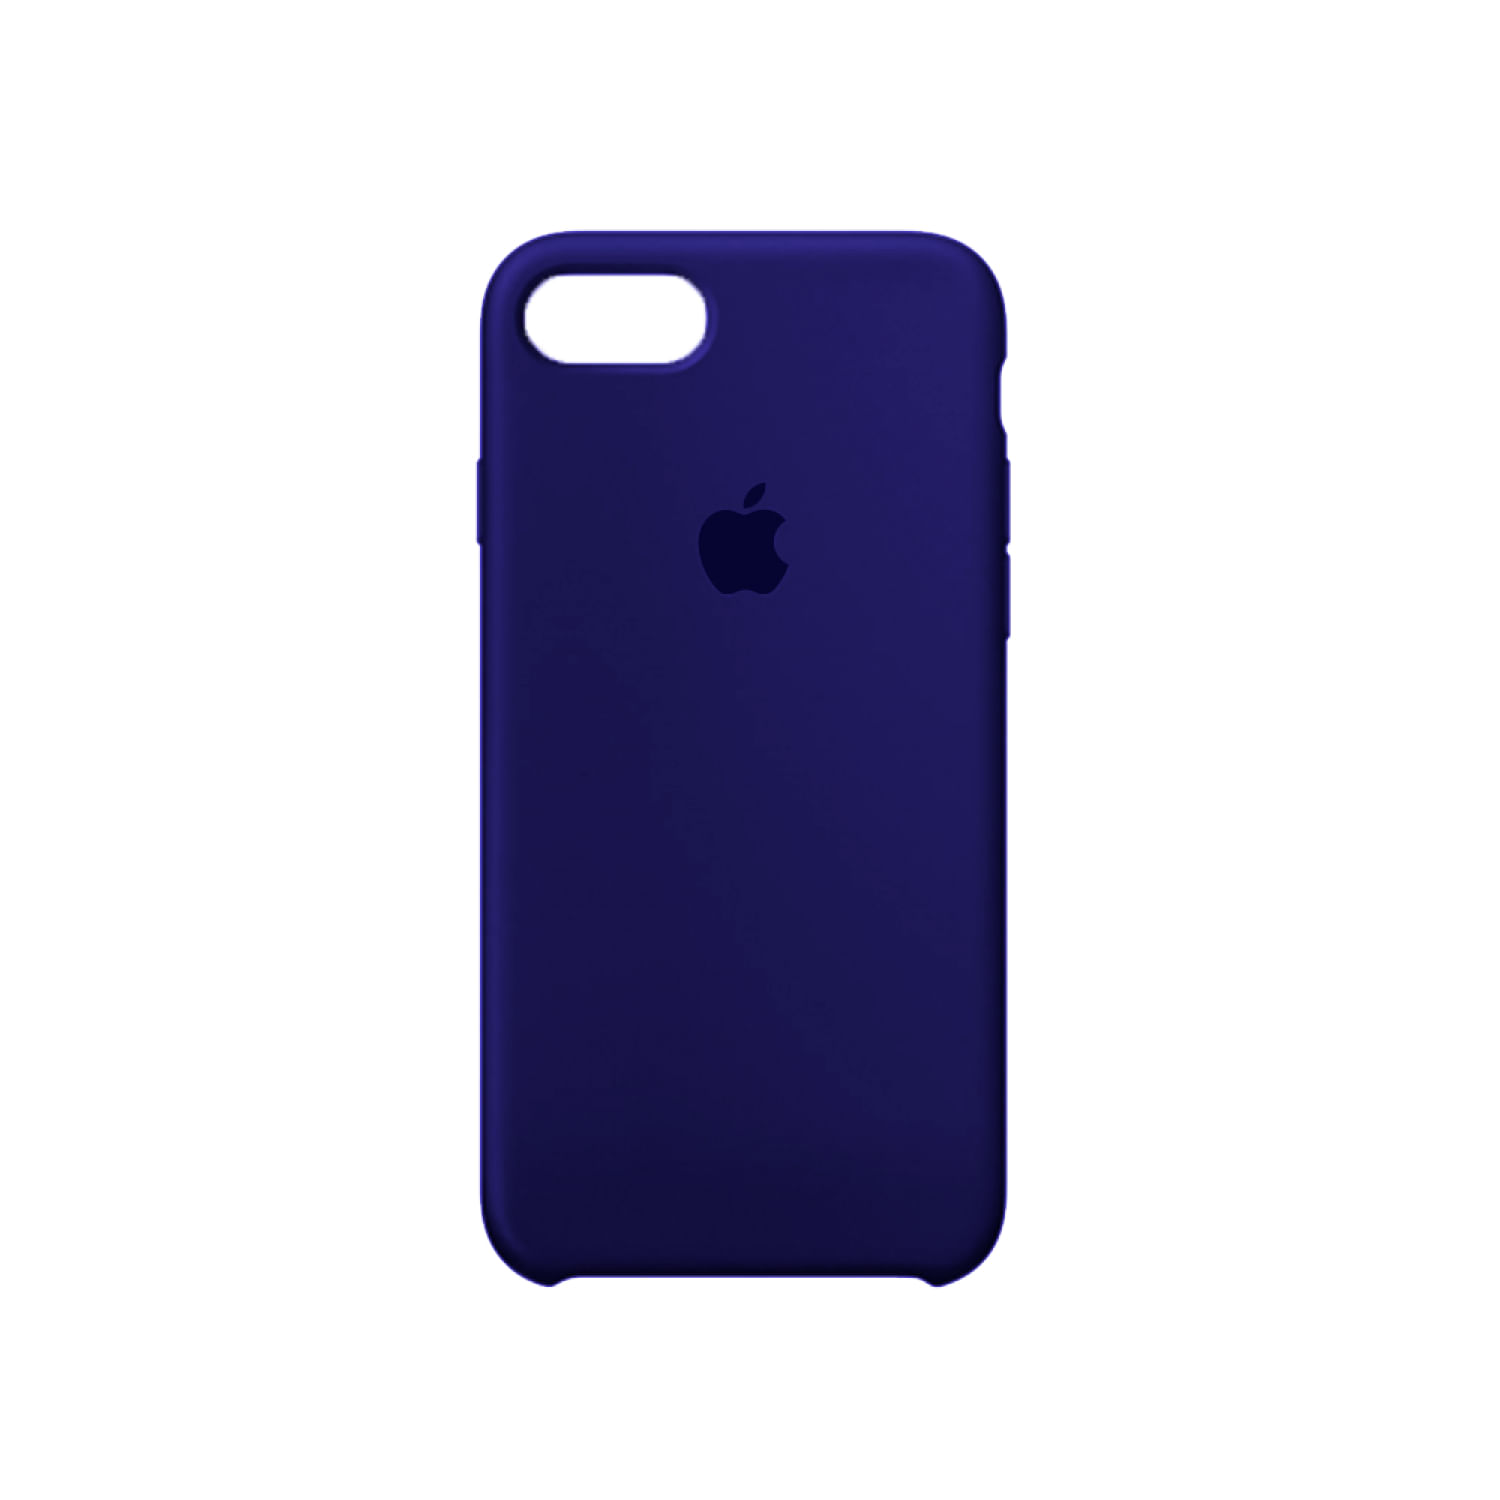 Case De Silicona Iphone 7 Azul